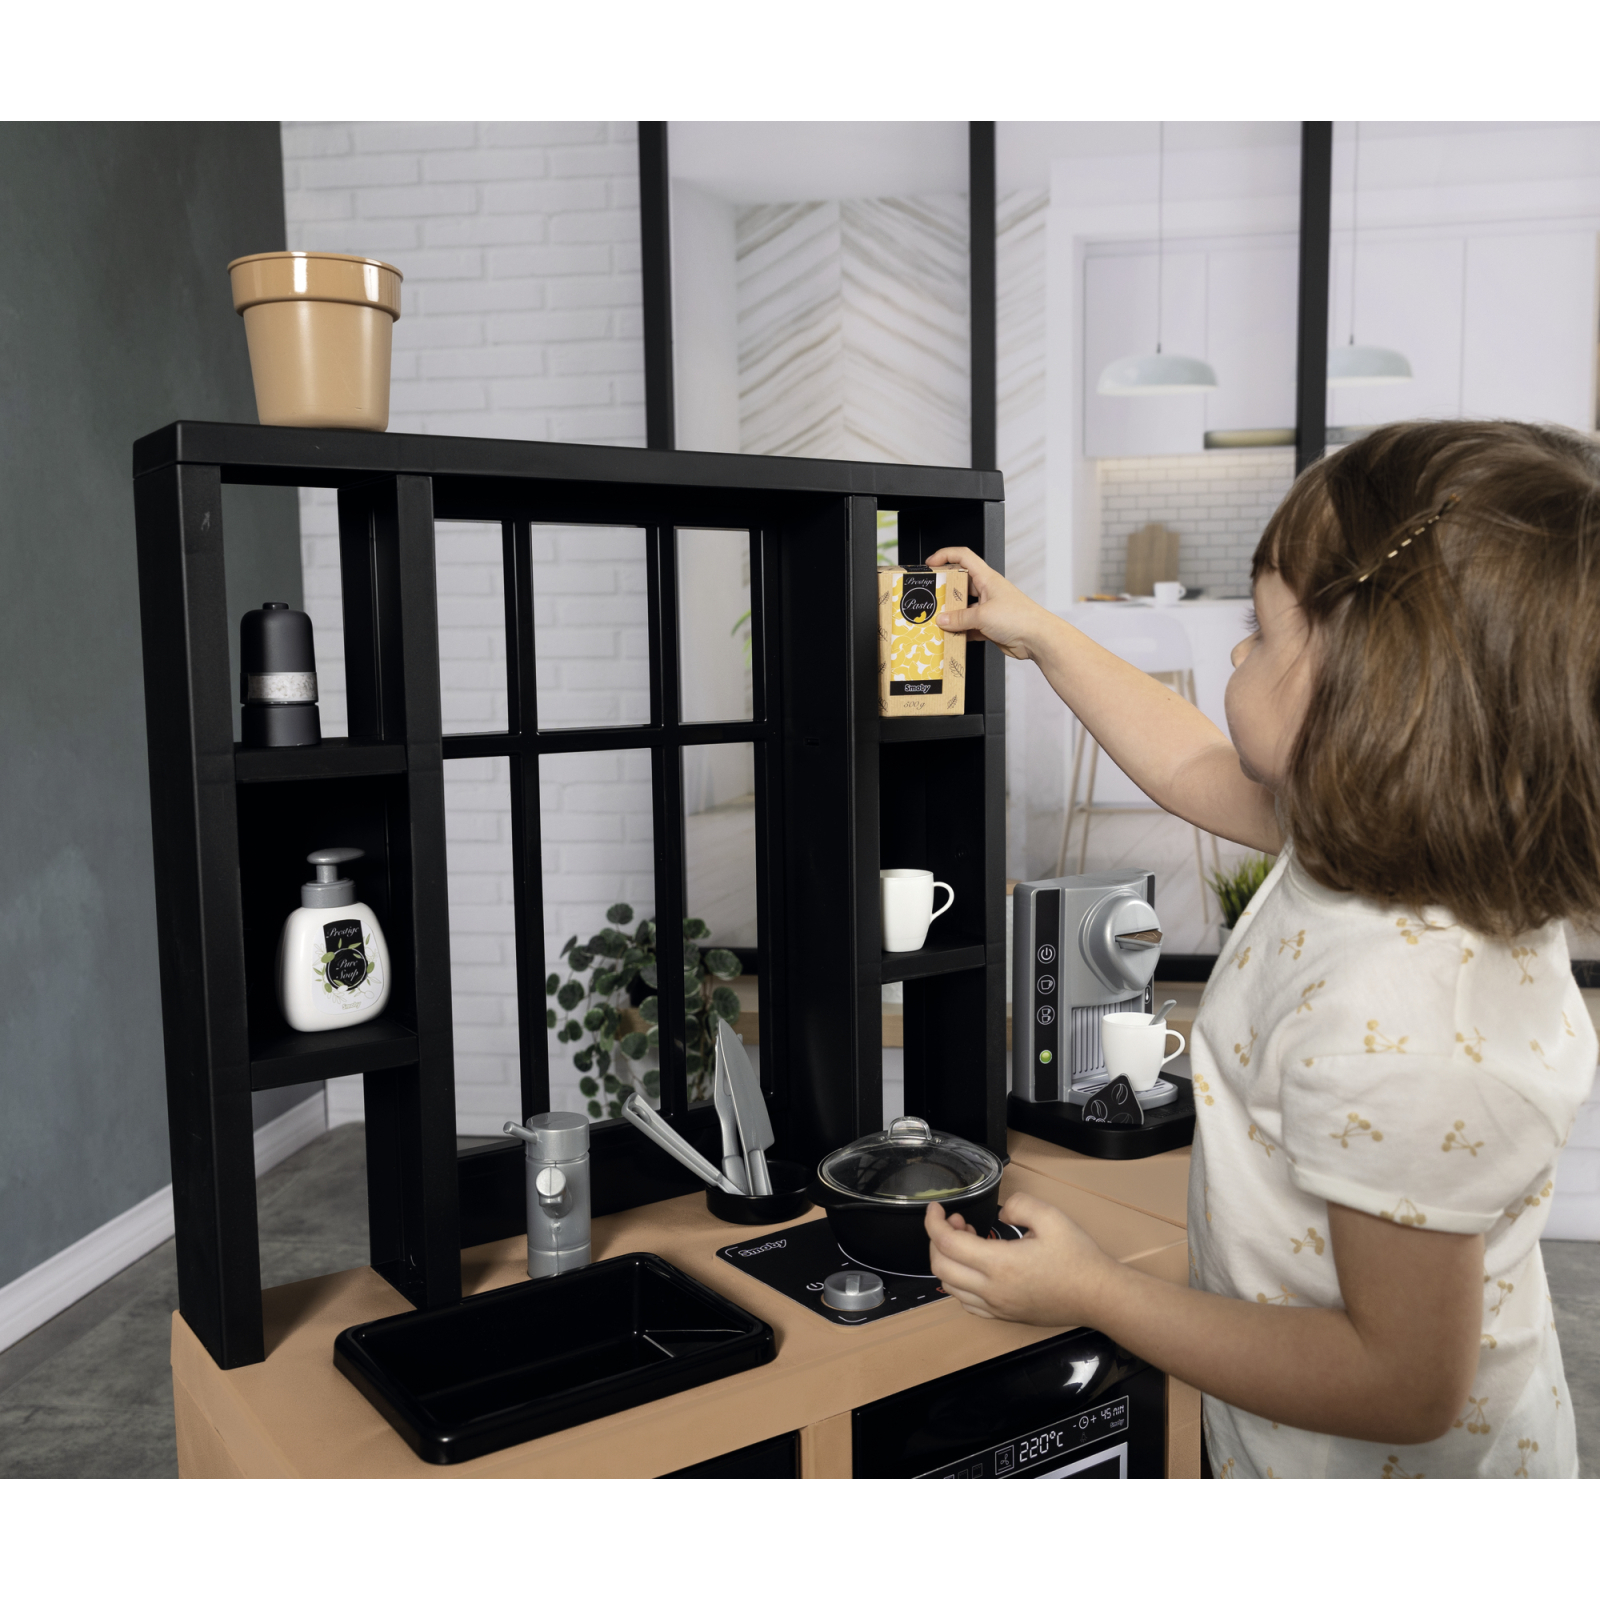 Игровой набор Smoby Интерактивная кухня Лофт с кофеваркой, аксессуарами и звуковым эффектом (312600) изображение 9